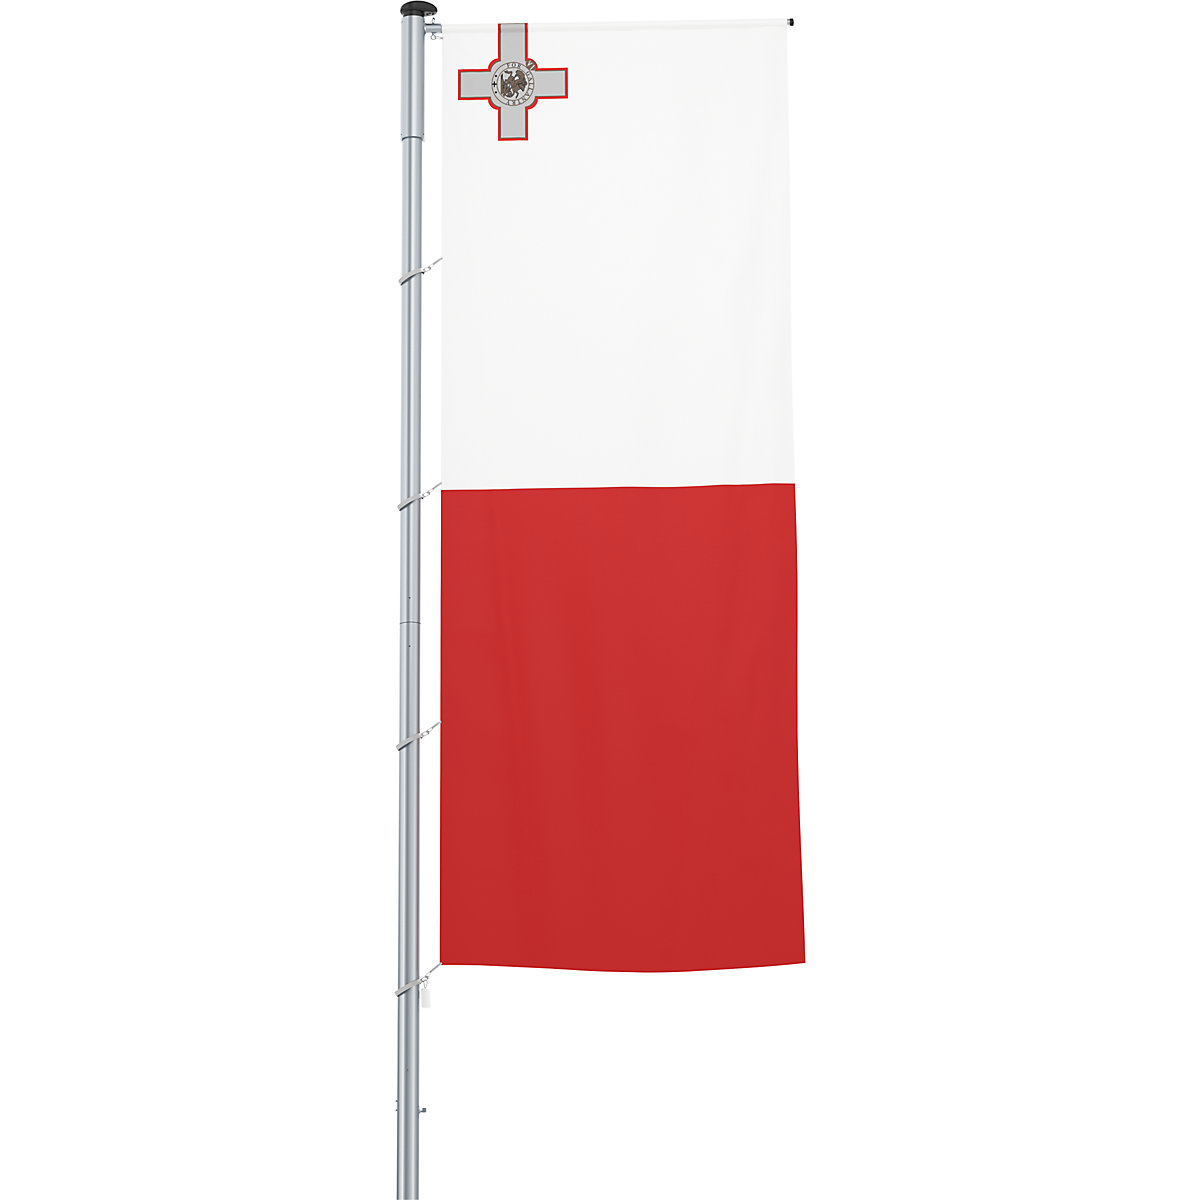 Mannus – Bandera con pluma/bandera del país, formato 1,2 x 3 m, Malta